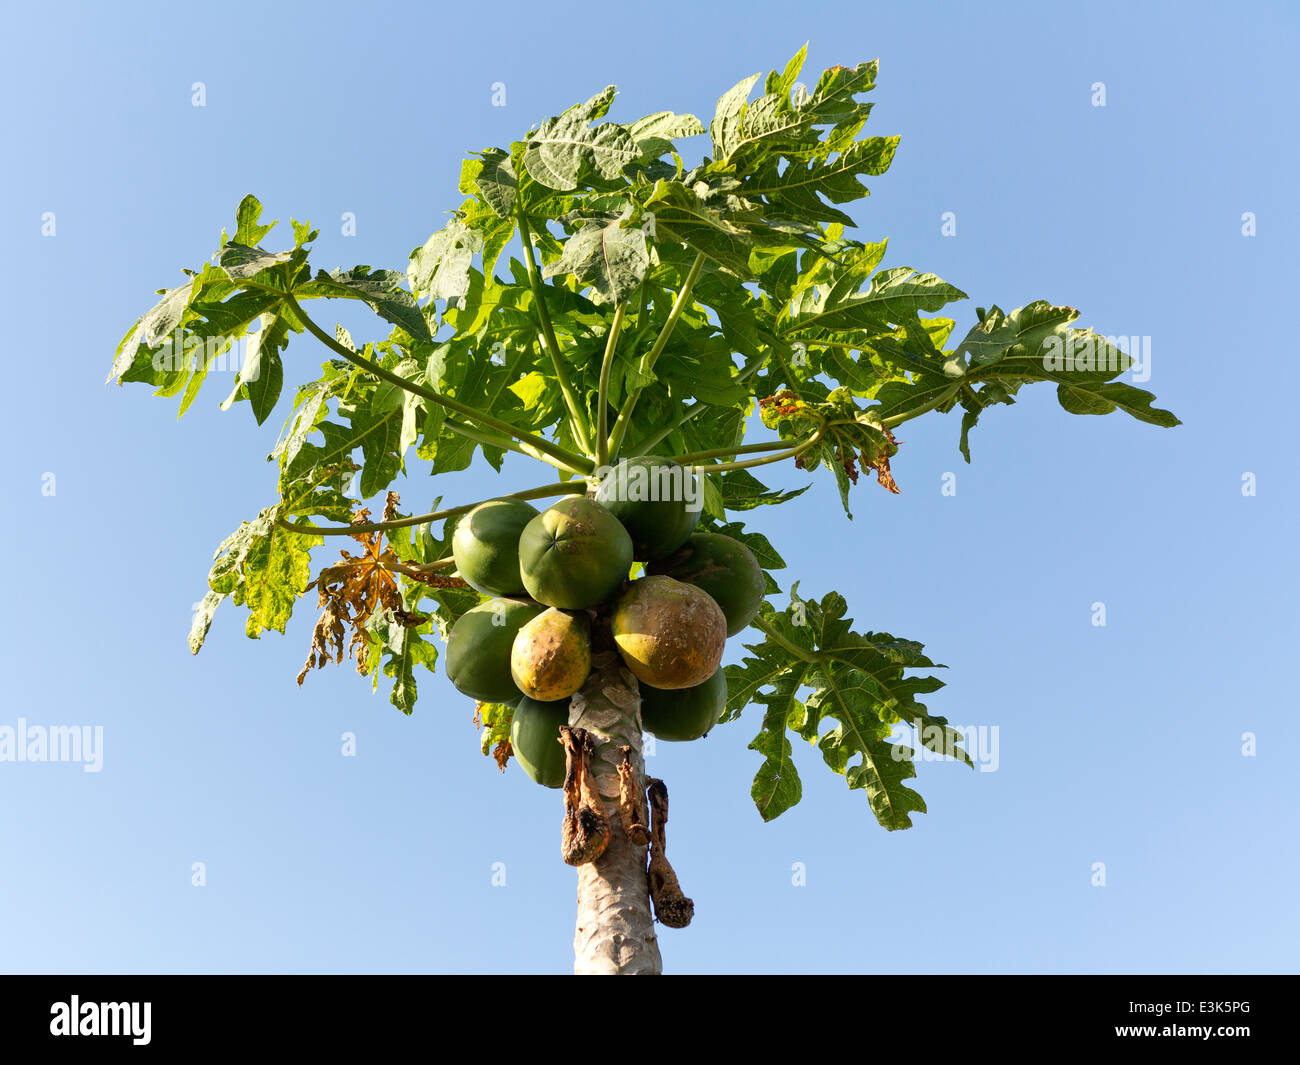 La parte superior de un árbol de papaya contra un cielo azul mostrando las hojas y los frutos algunas frutas con rot y manchas Foto de stock